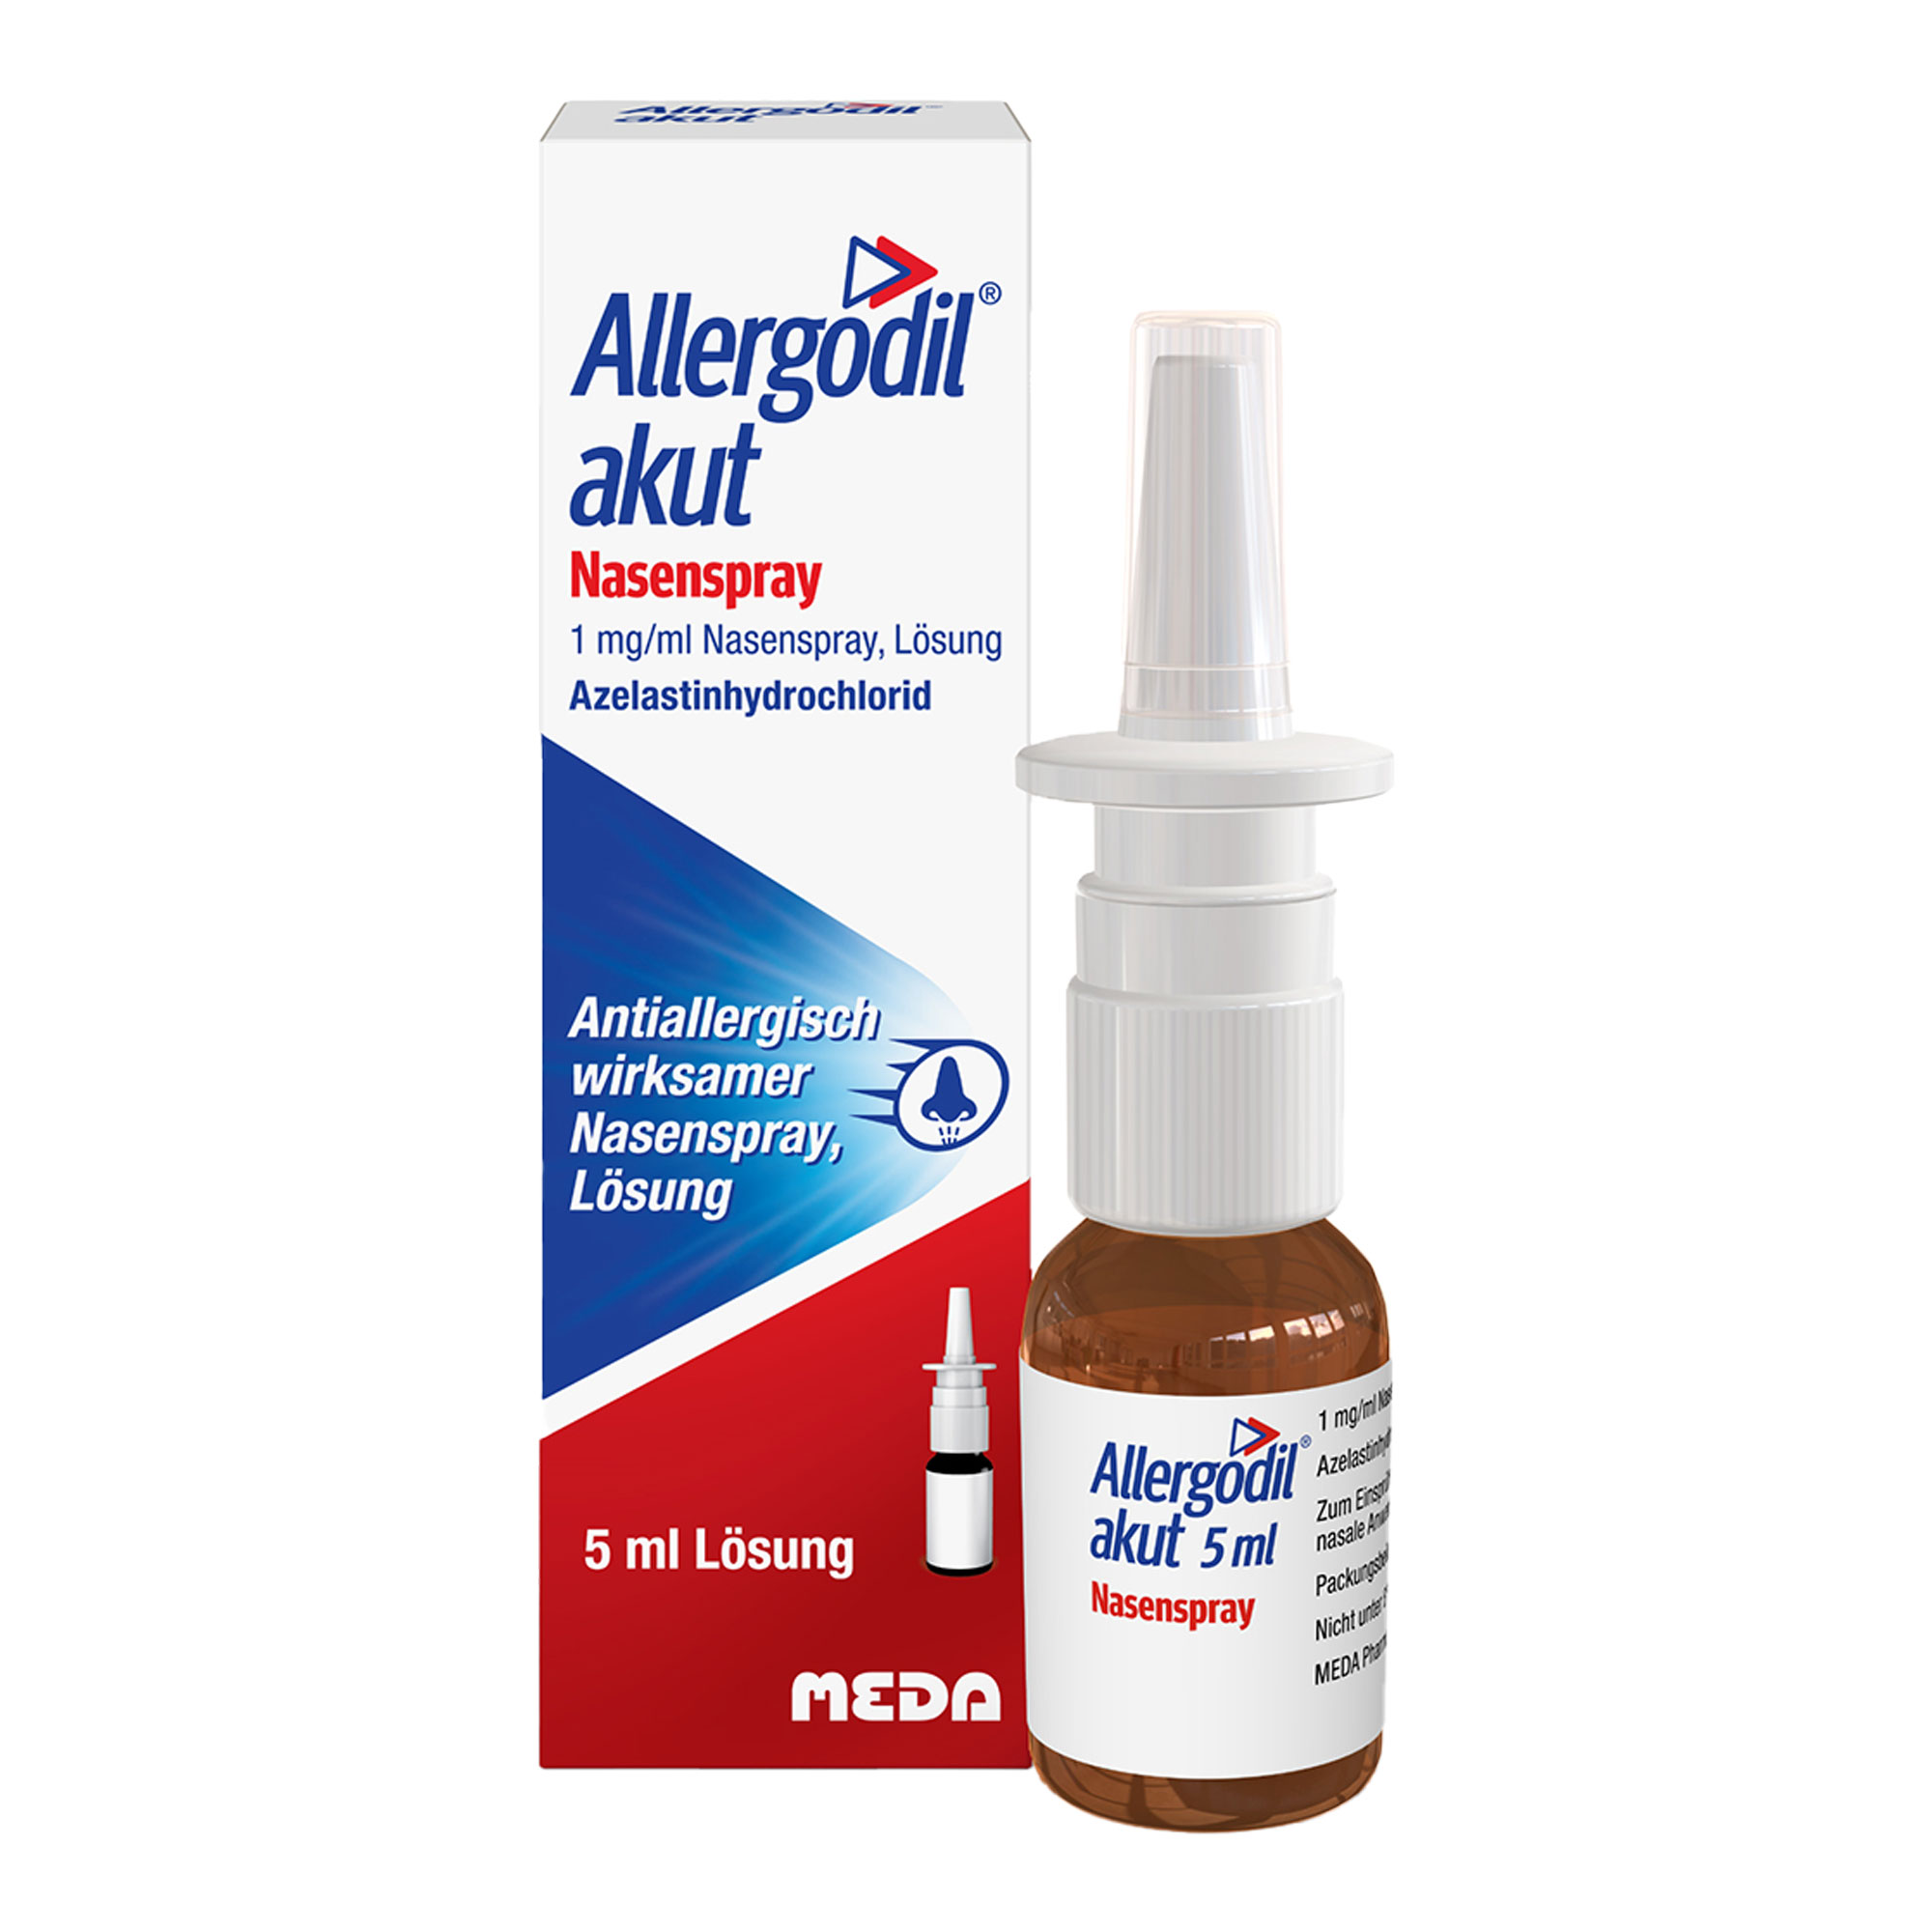 Nasenspray zur Behandlung von saisonalen Allergien, wie Heuschnupfen.